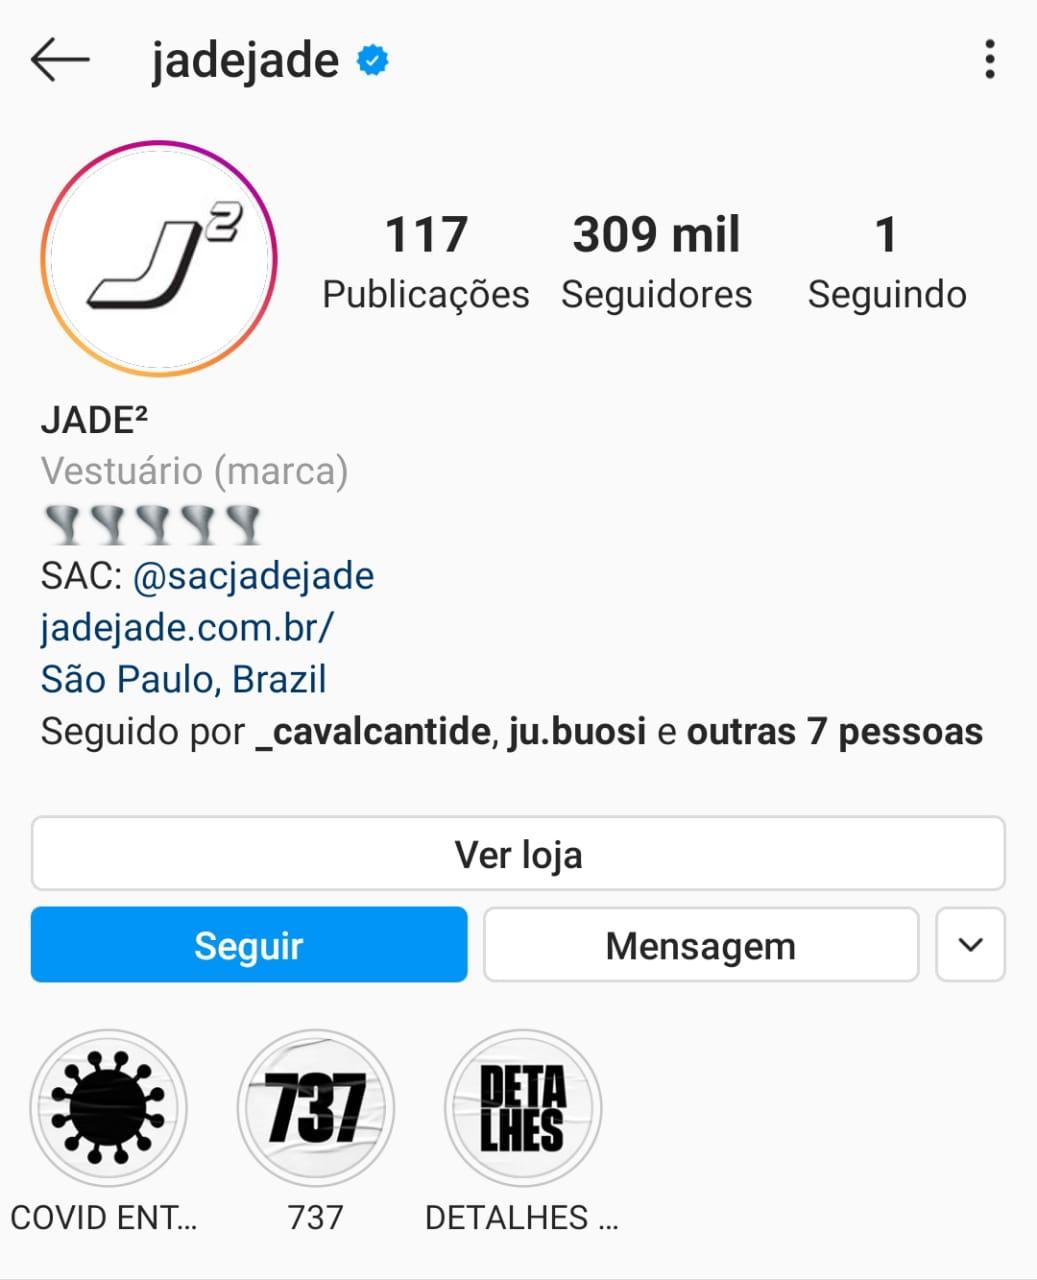 Imagem mostra o perfil no Instagram da página Jade ao quadrado